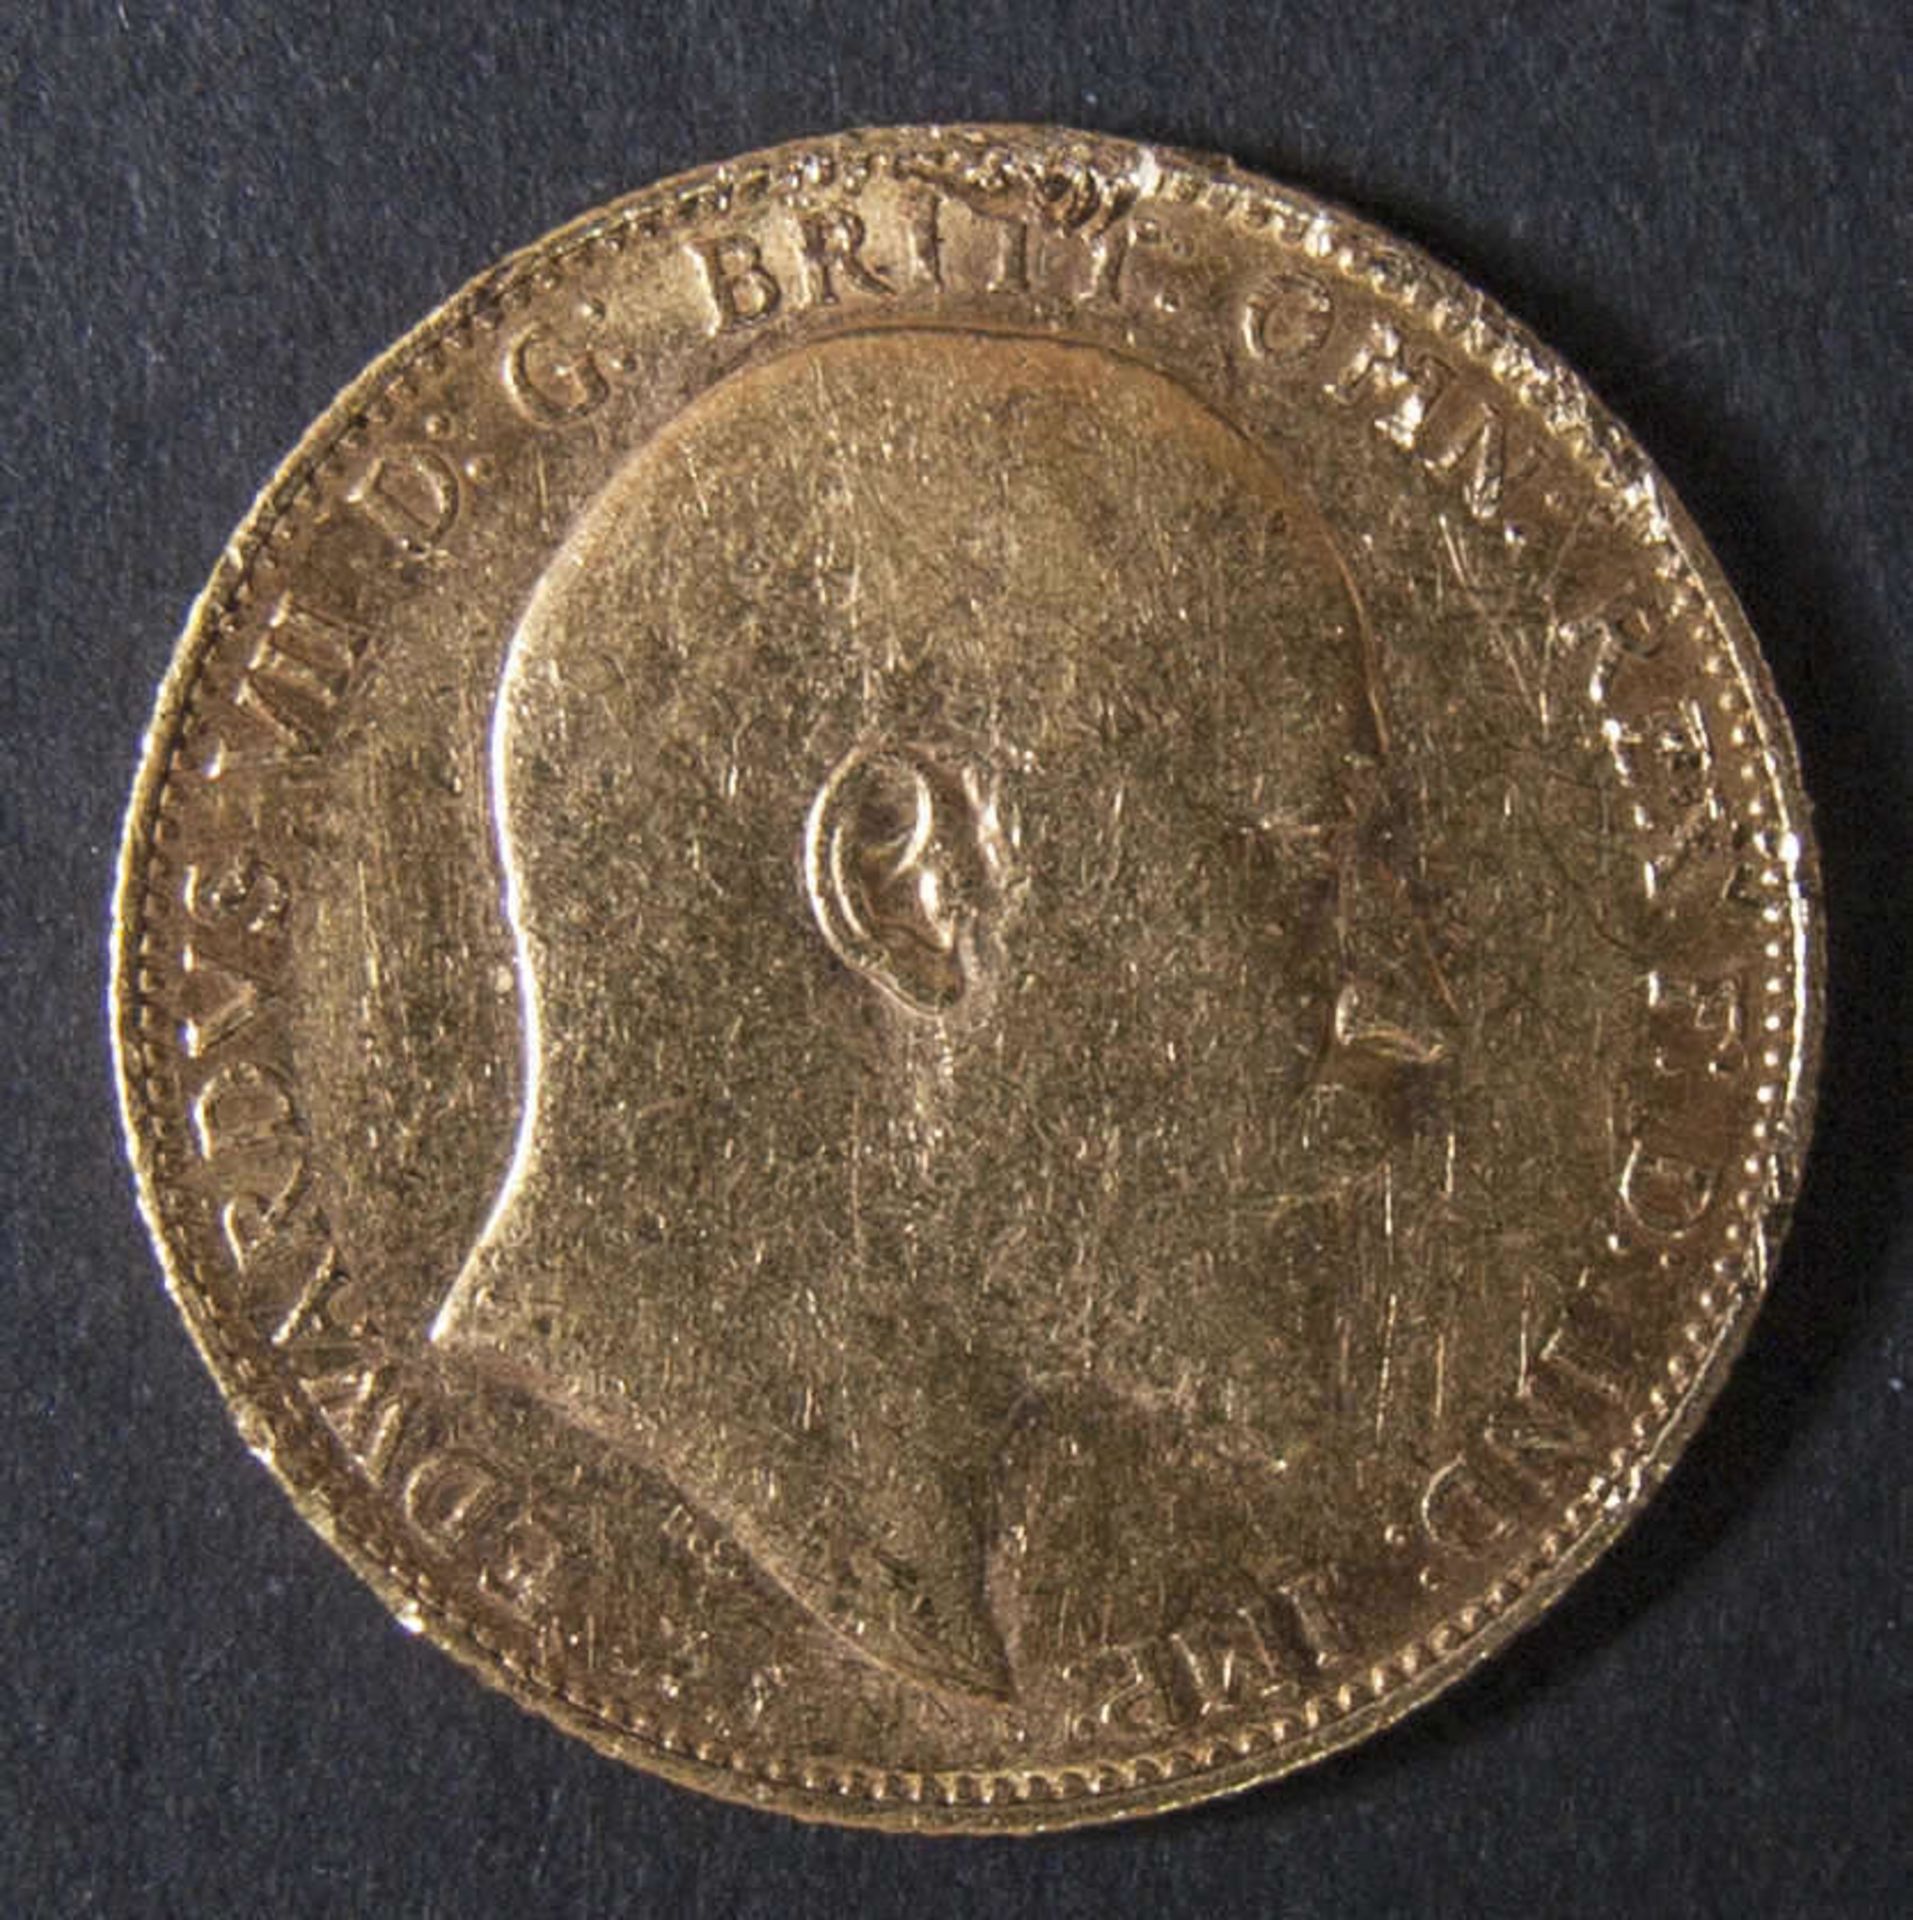 Großbritannien 1902, Sovereign "Edward VII.". Gold. Gewicht: ca. 7,9 g. Qualität: ss. Great